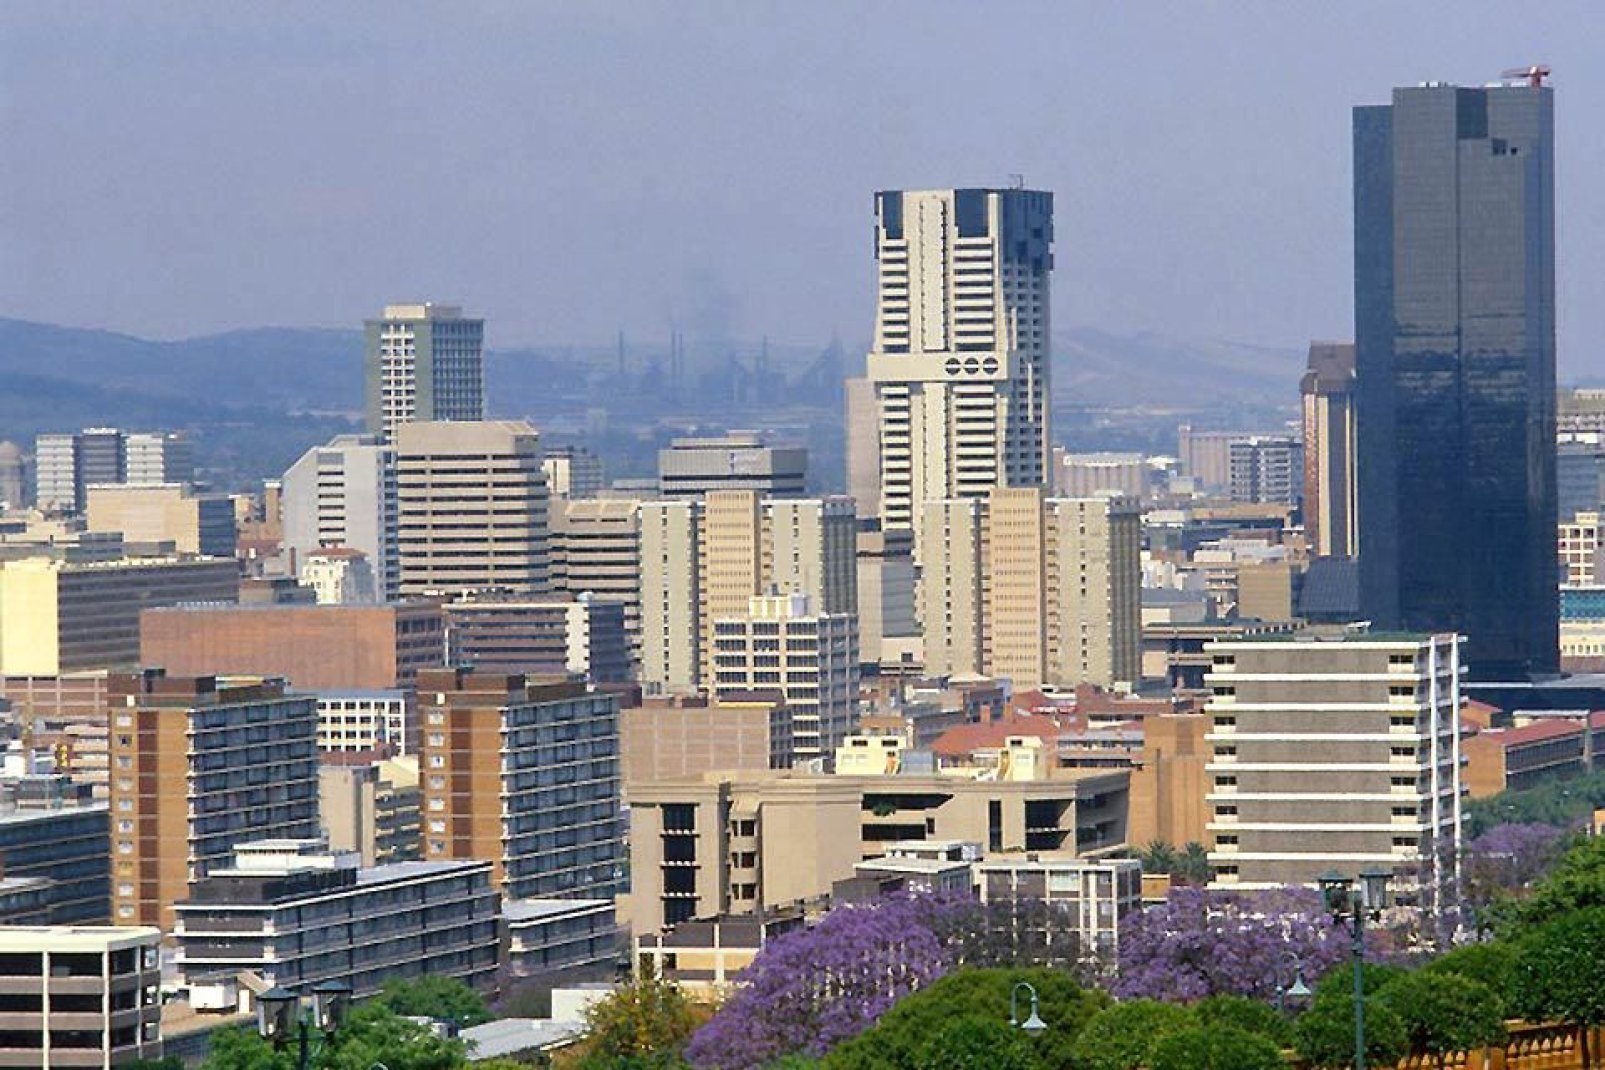 La ville, ancienne capitale sud-africaine du Transvaal, est plutôt touristique. Pretoria est une ville dynamique qui sait faire valoir ses atouts.